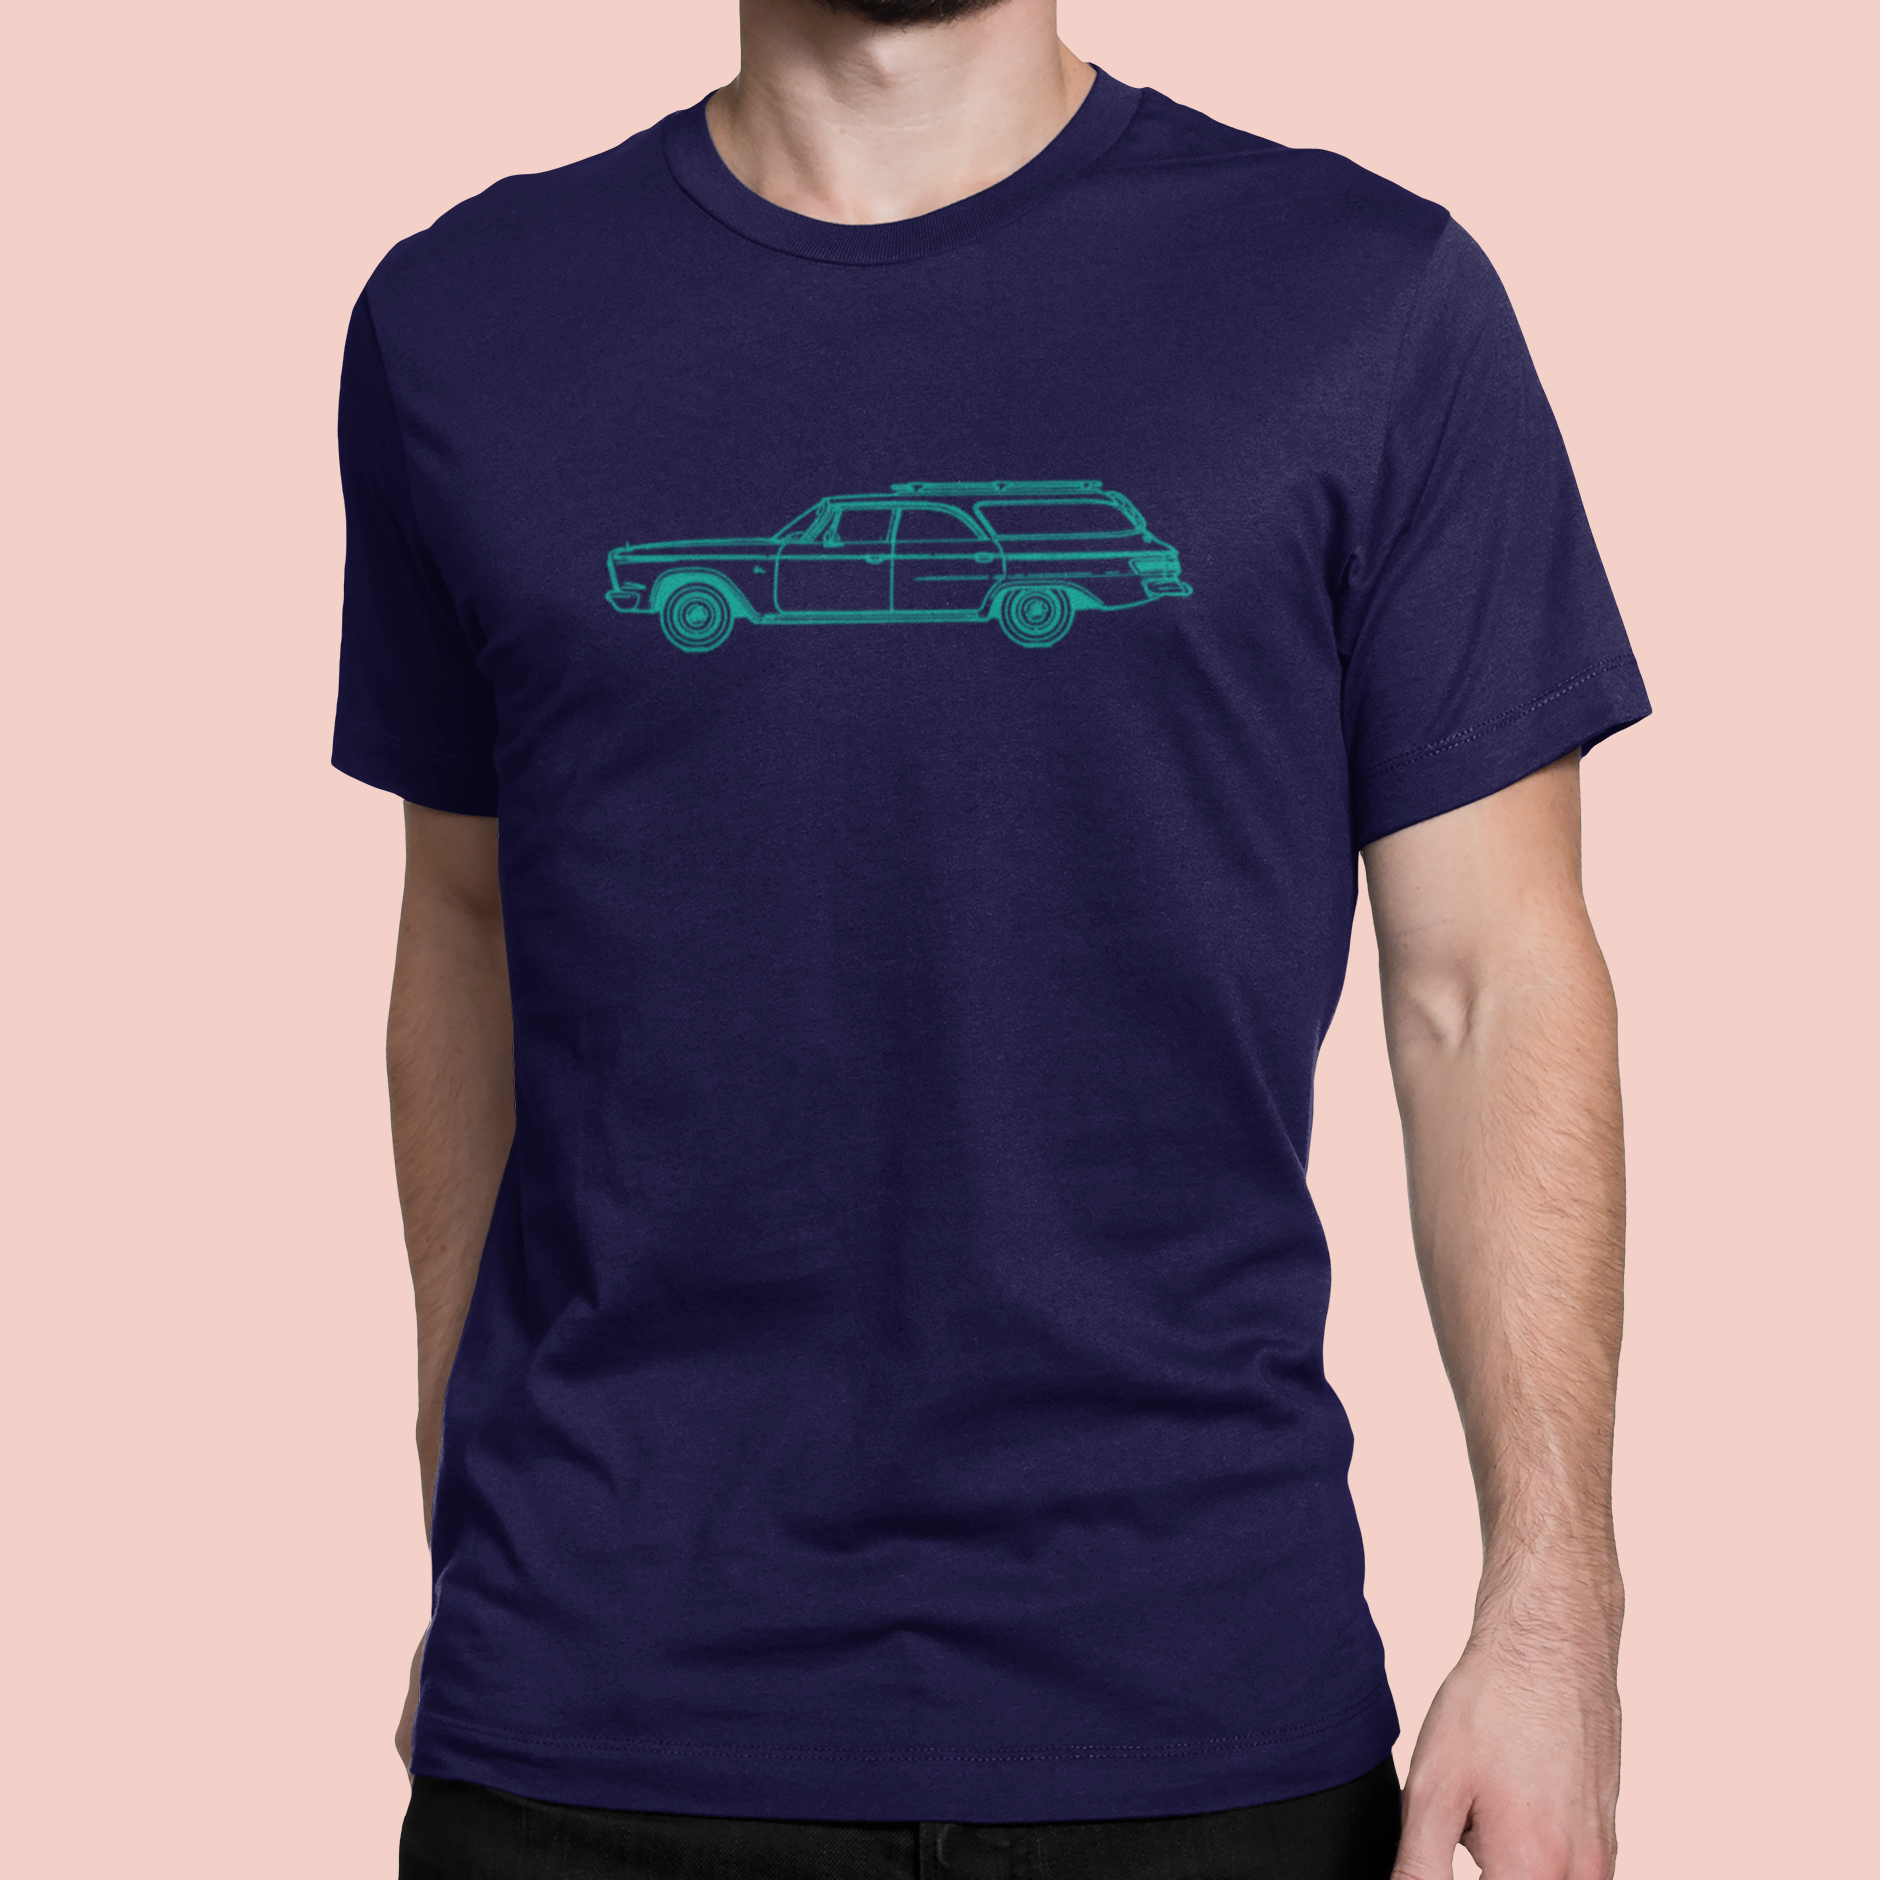 Family car - Men's/Unisex T-shirt